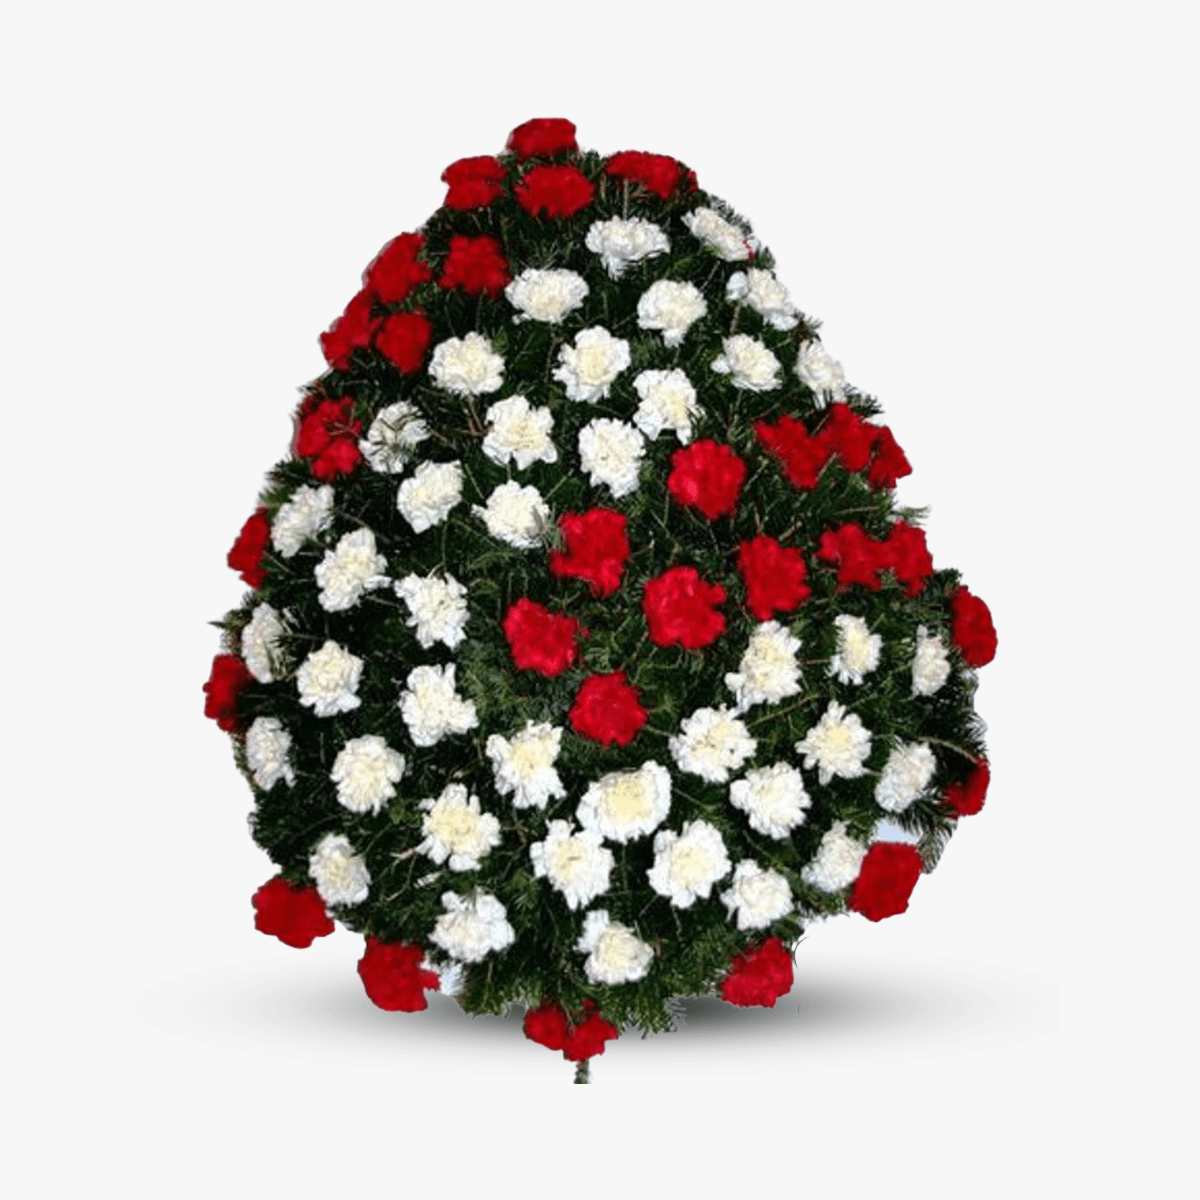 Coroana funerara cu garoafe albe si rosii – Standard albe imagine 2022